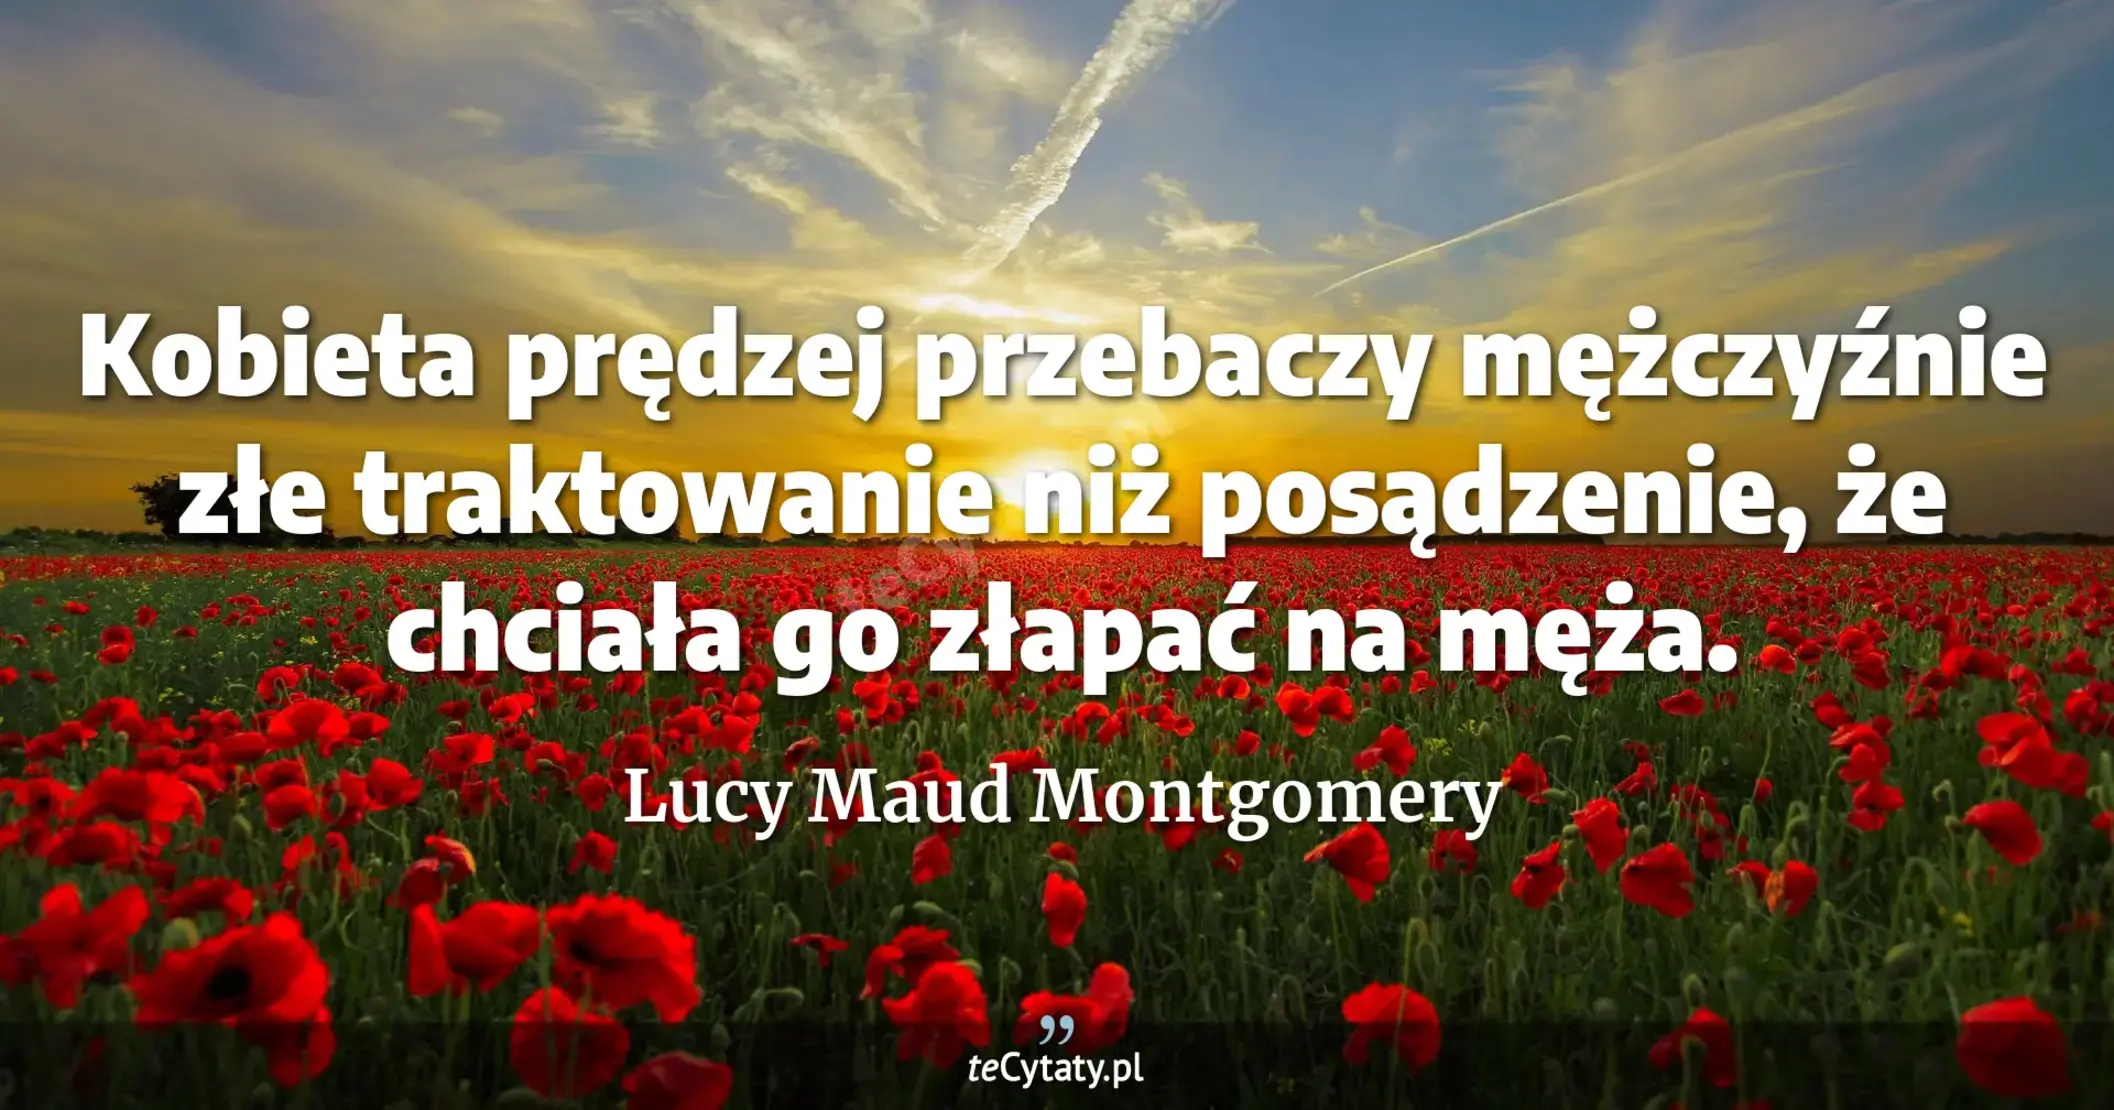 Kobieta prędzej przebaczy mężczyźnie złe traktowanie niż posądzenie, że chciała go złapać na męża. - Lucy Maud Montgomery